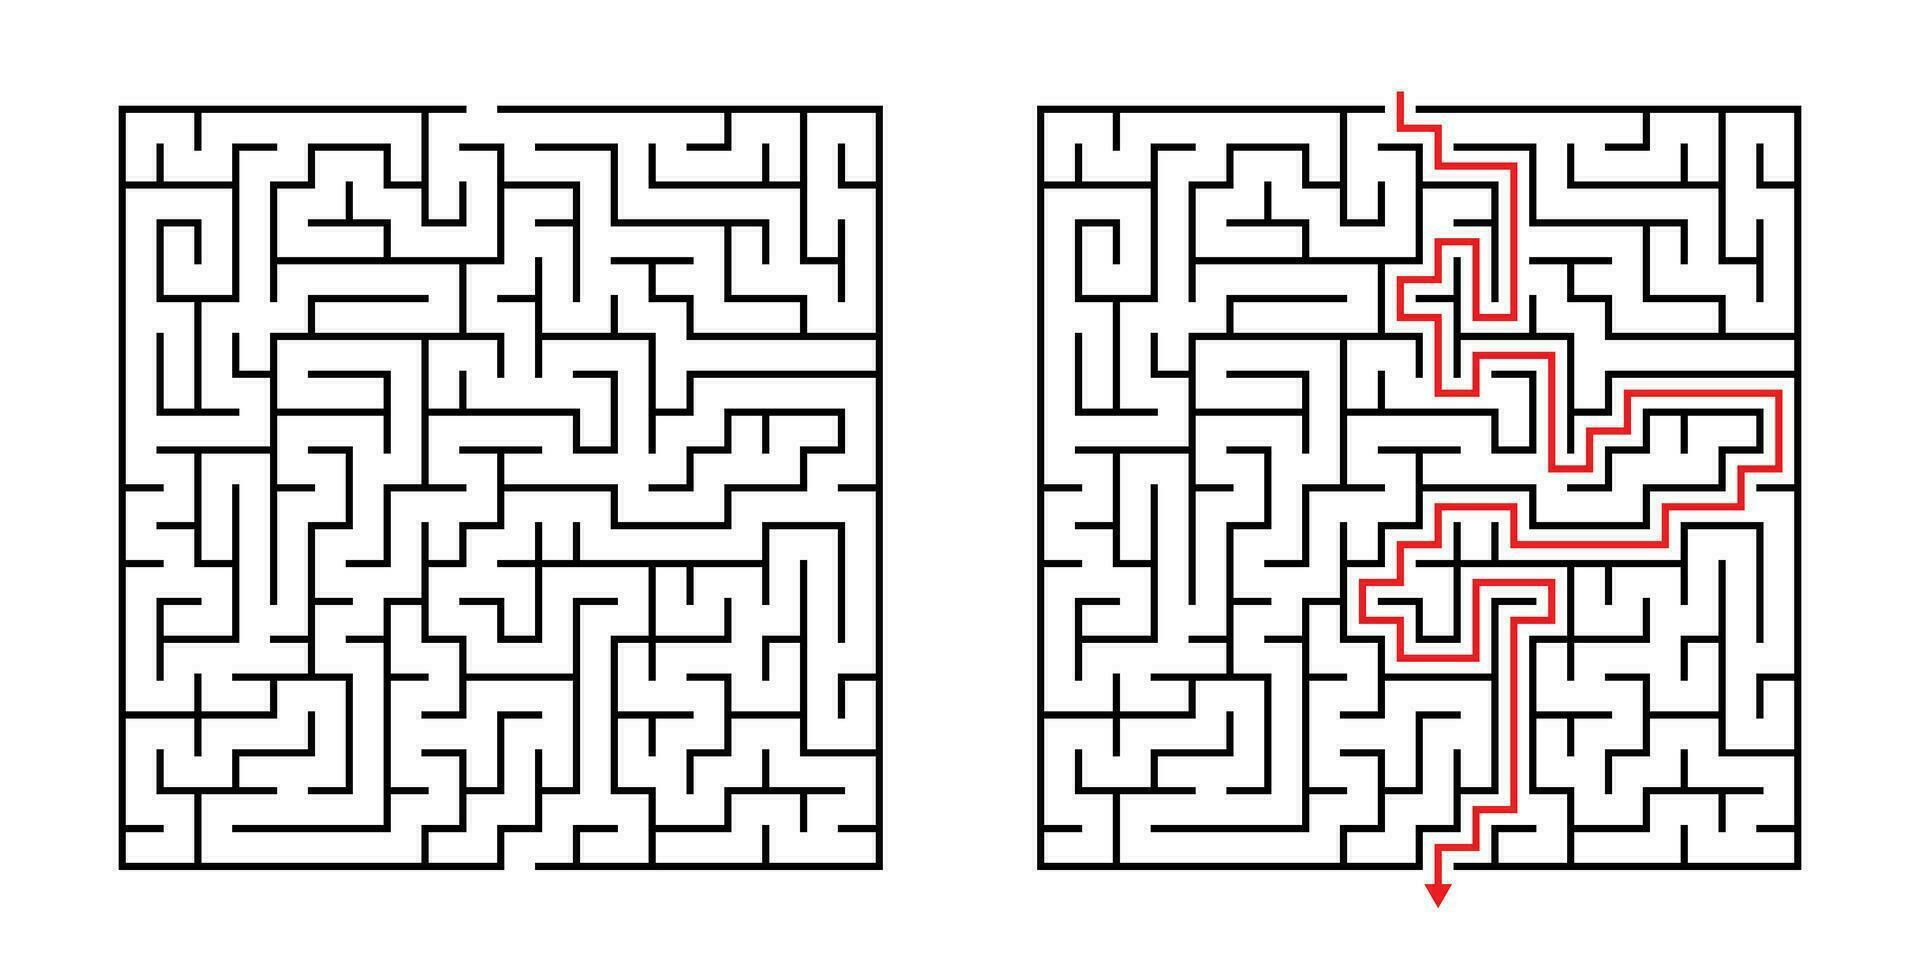 vektor fyrkant labyrint - labyrint med inkluderad lösning i svart röd. rolig pedagogisk sinne spel för samordning, problem lösning, beslut framställning Kompetens testa.